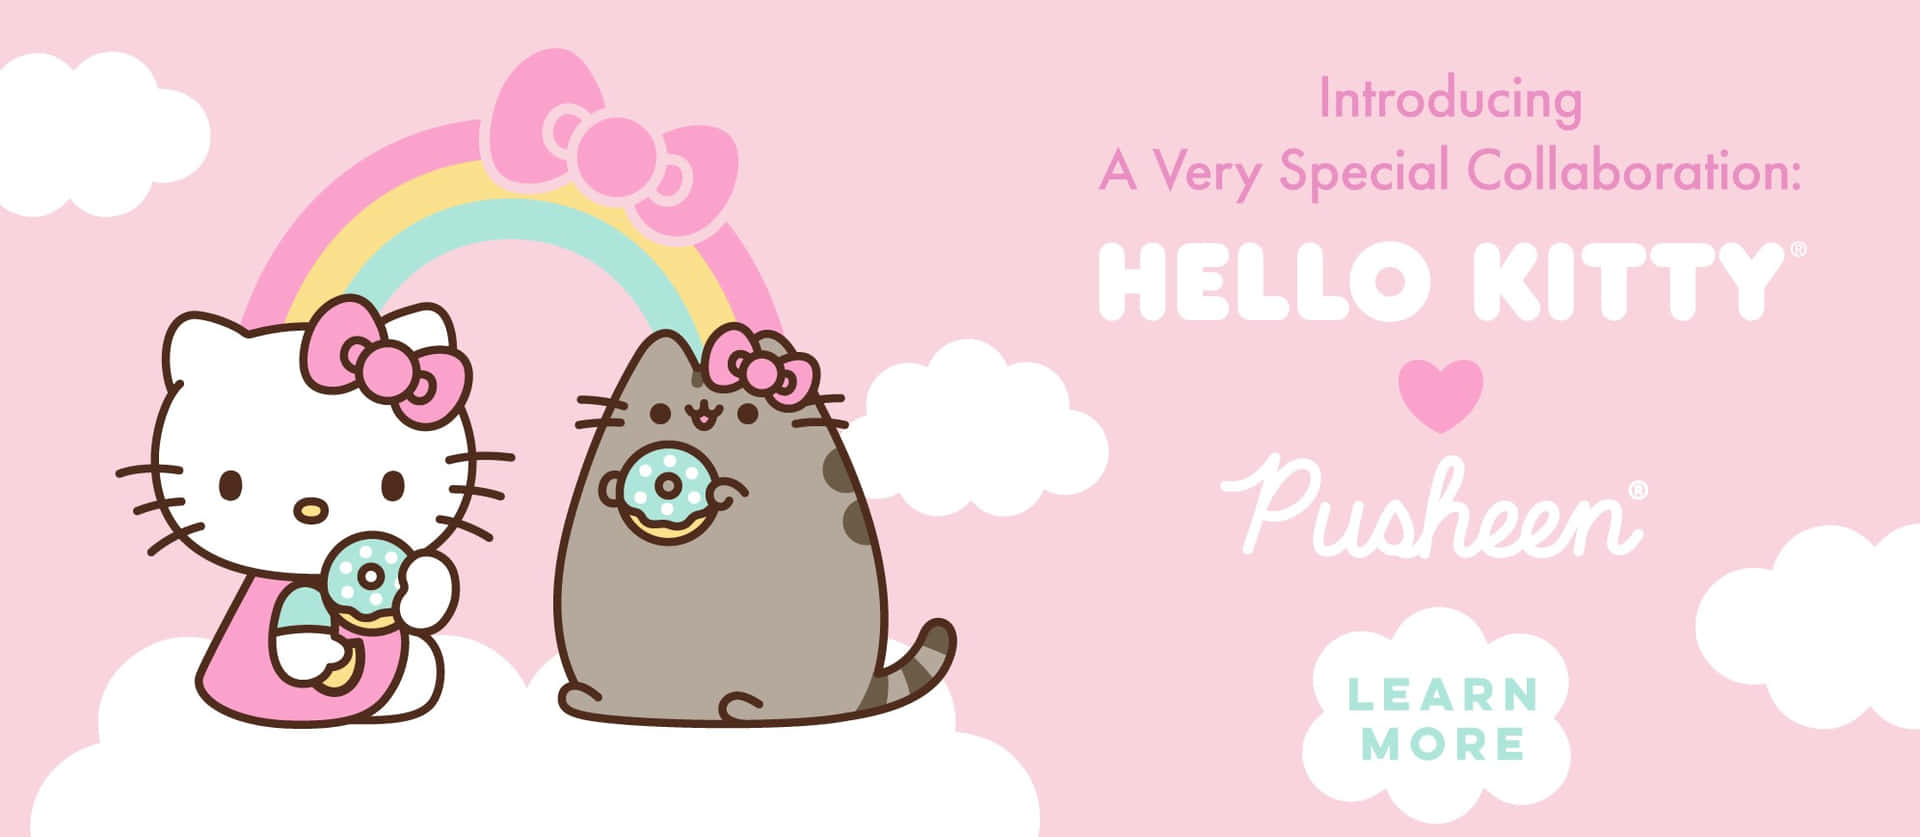 Vis noget kærlighed til Pusheen - den søde, kawaii kat! Wallpaper